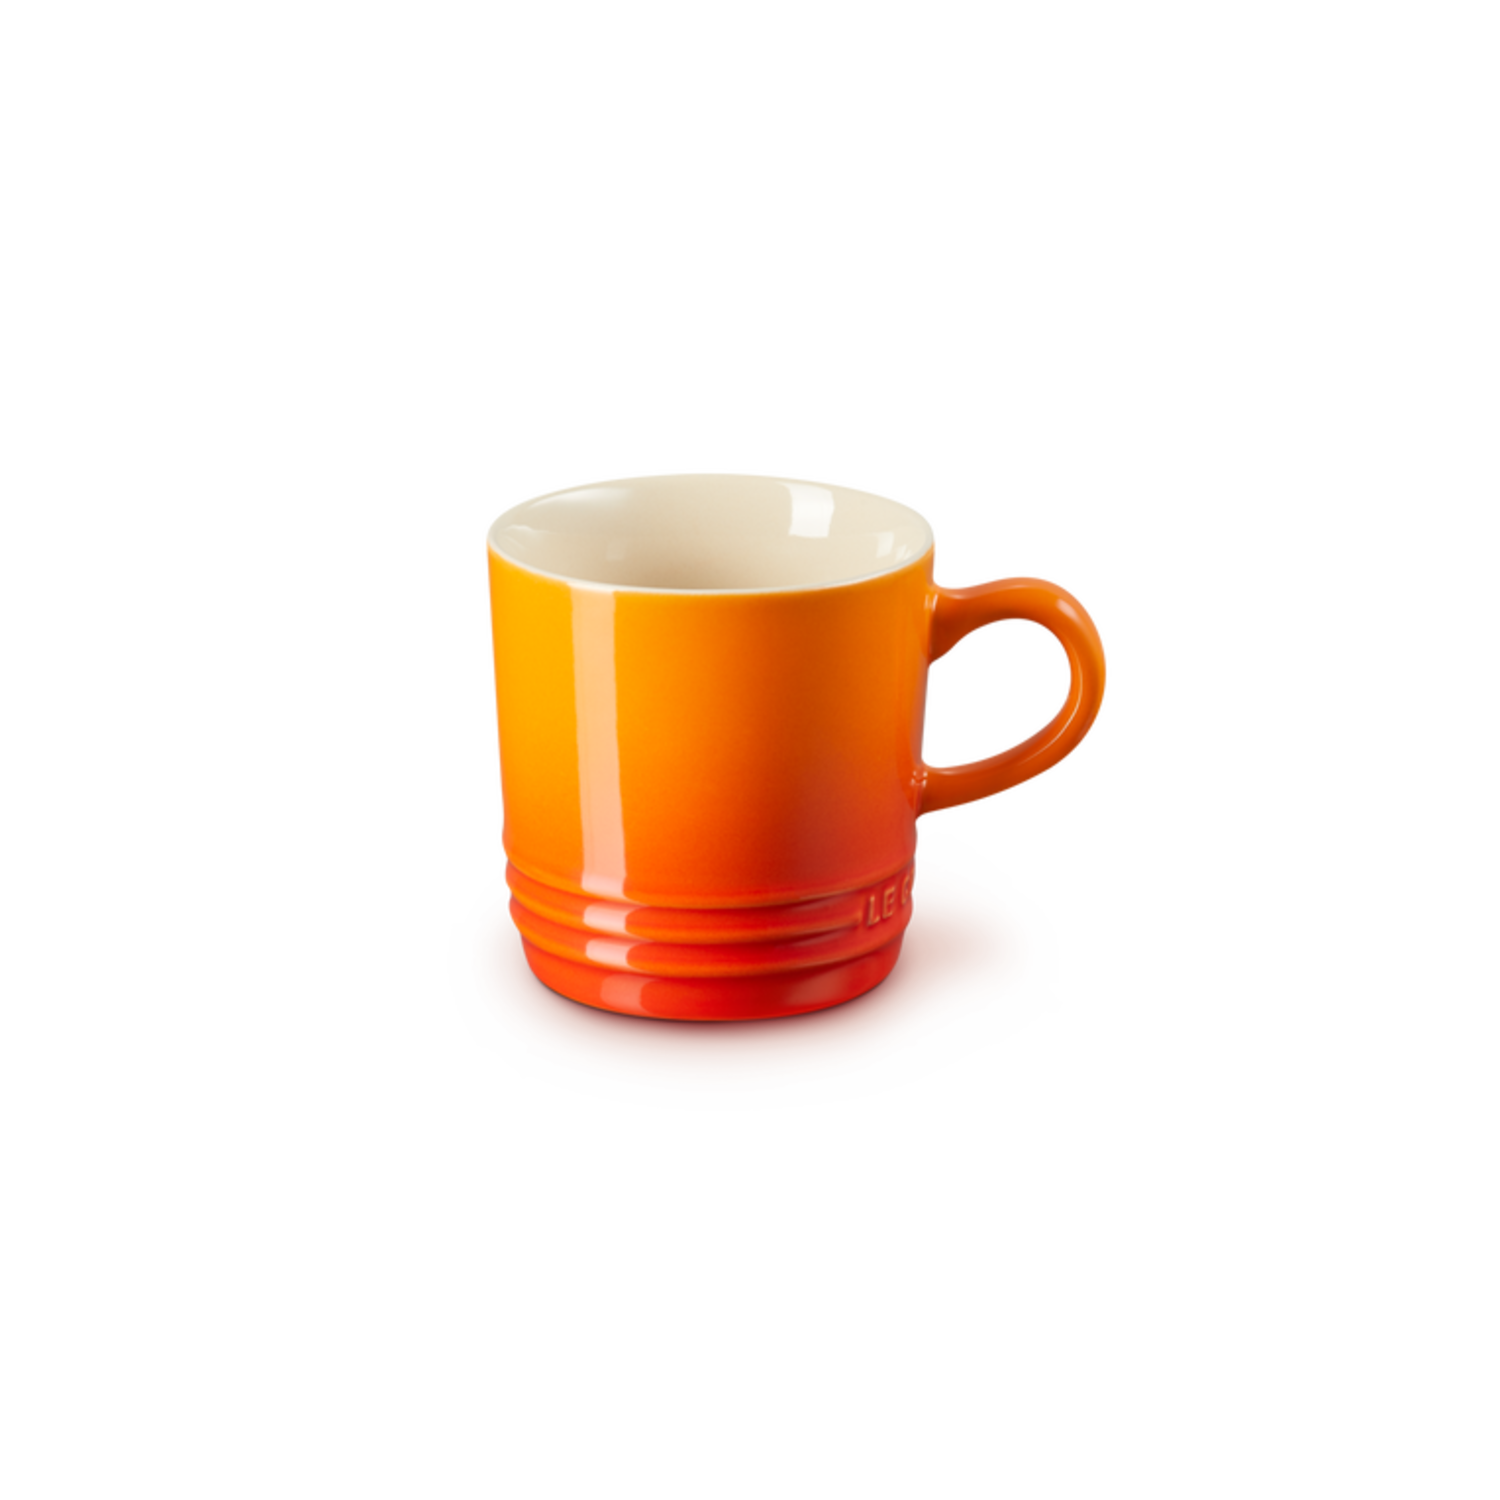 Door jaloezie Uittreksel Le Creuset Koffiemok Oranje-Rood 200 ml | Groot assortiment Le Creuset -  Kookwinkel Van Erp